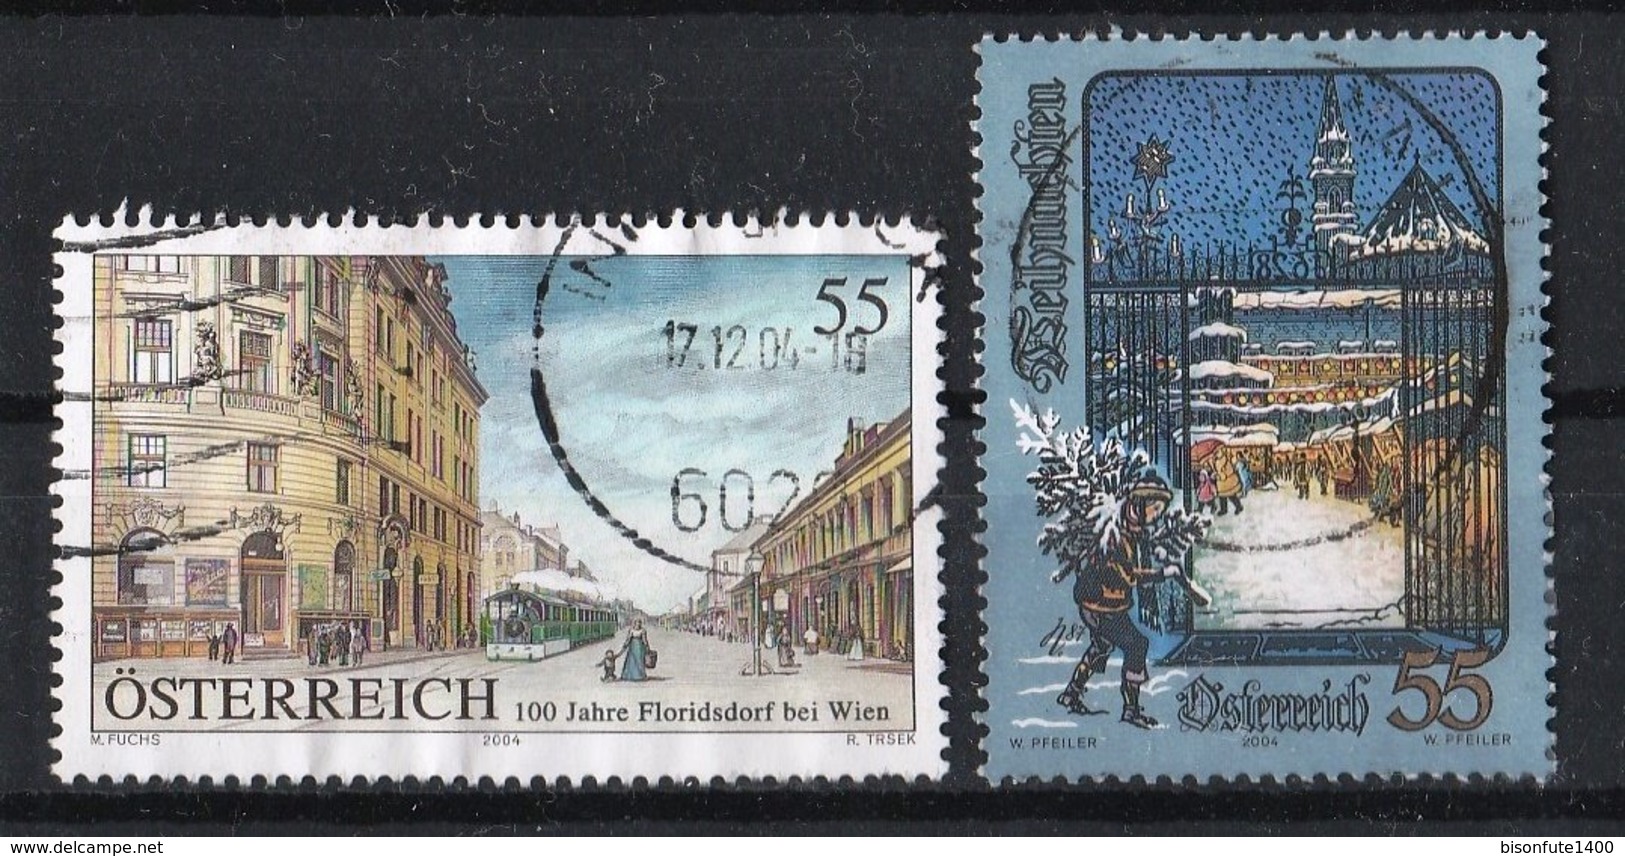 Autriche 2004 : Timbres Yvert & Tellier N° 2306 - 2317 - 2319 - 2321 - 2328 Et 2339 Oblitérés. - Oblitérés